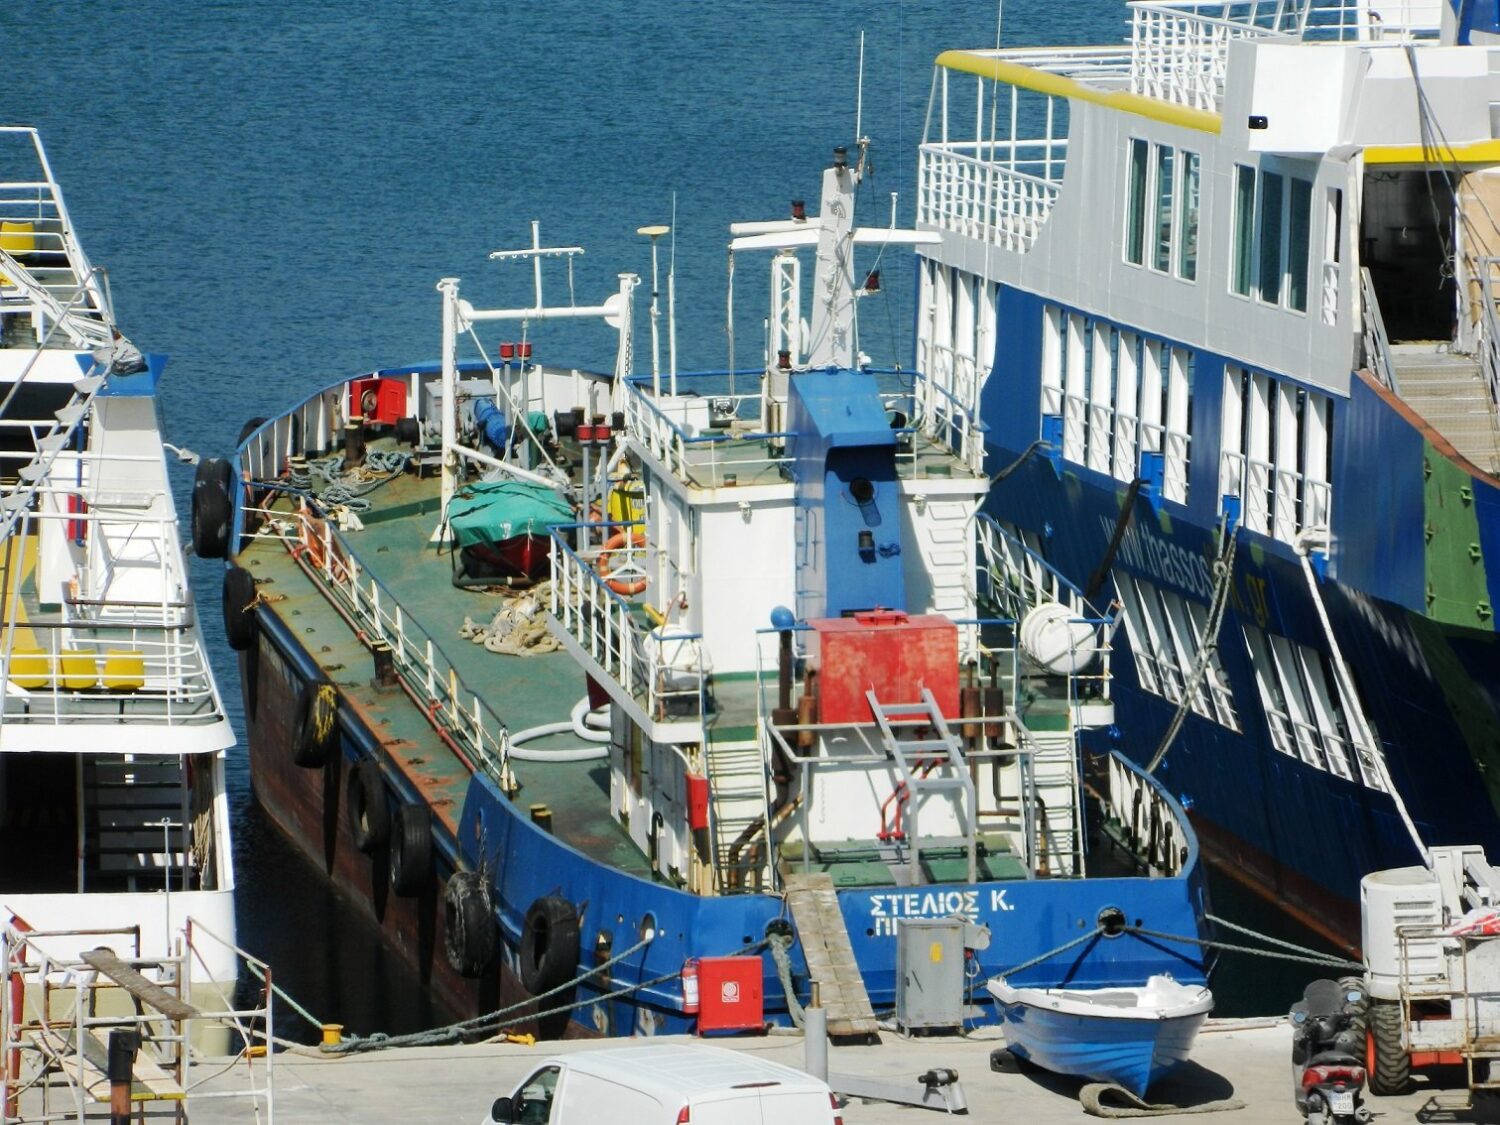 Ούτε τα έξοδα μετακίνησης δεν κάλυψε στους ναυτικούς – ομήρους του “Στέλιος Κ” η πλοιοκτήτρια εταιρεία - e-Nautilia.gr | Το Ελληνικό Portal για την Ναυτιλία. Τελευταία νέα, άρθρα, Οπτικοακουστικό Υλικό